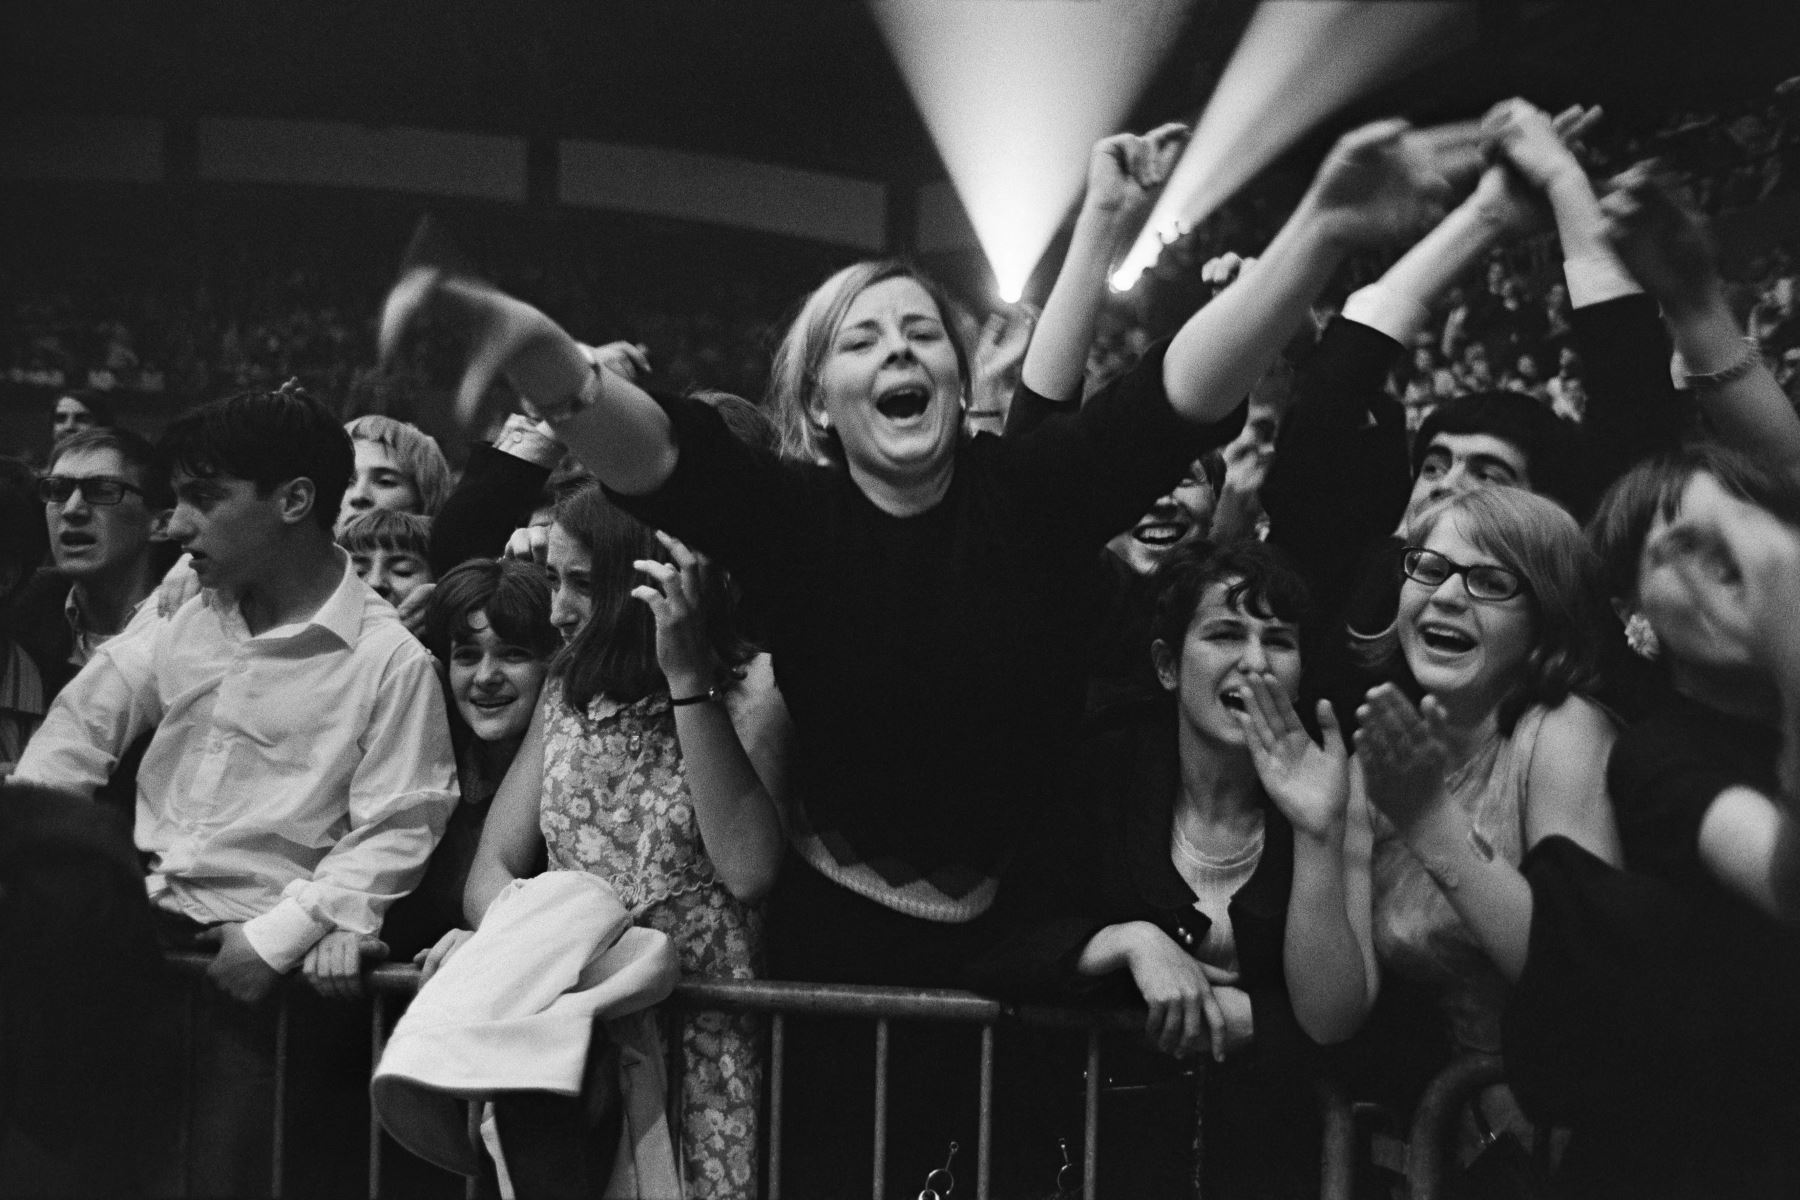 Los fans franceses esperan a los Beatles antes de su concierto en el Palais des Sports de París, el 20 de junio de 1965. La banda británica The Beatles realizó dos actuaciones en el Palais des Sports antes de una gira por Francia, Italia y España y luego una gira por Estados Unidos. Estados Unidos durante el verano de 1965. 
Foto : AFP